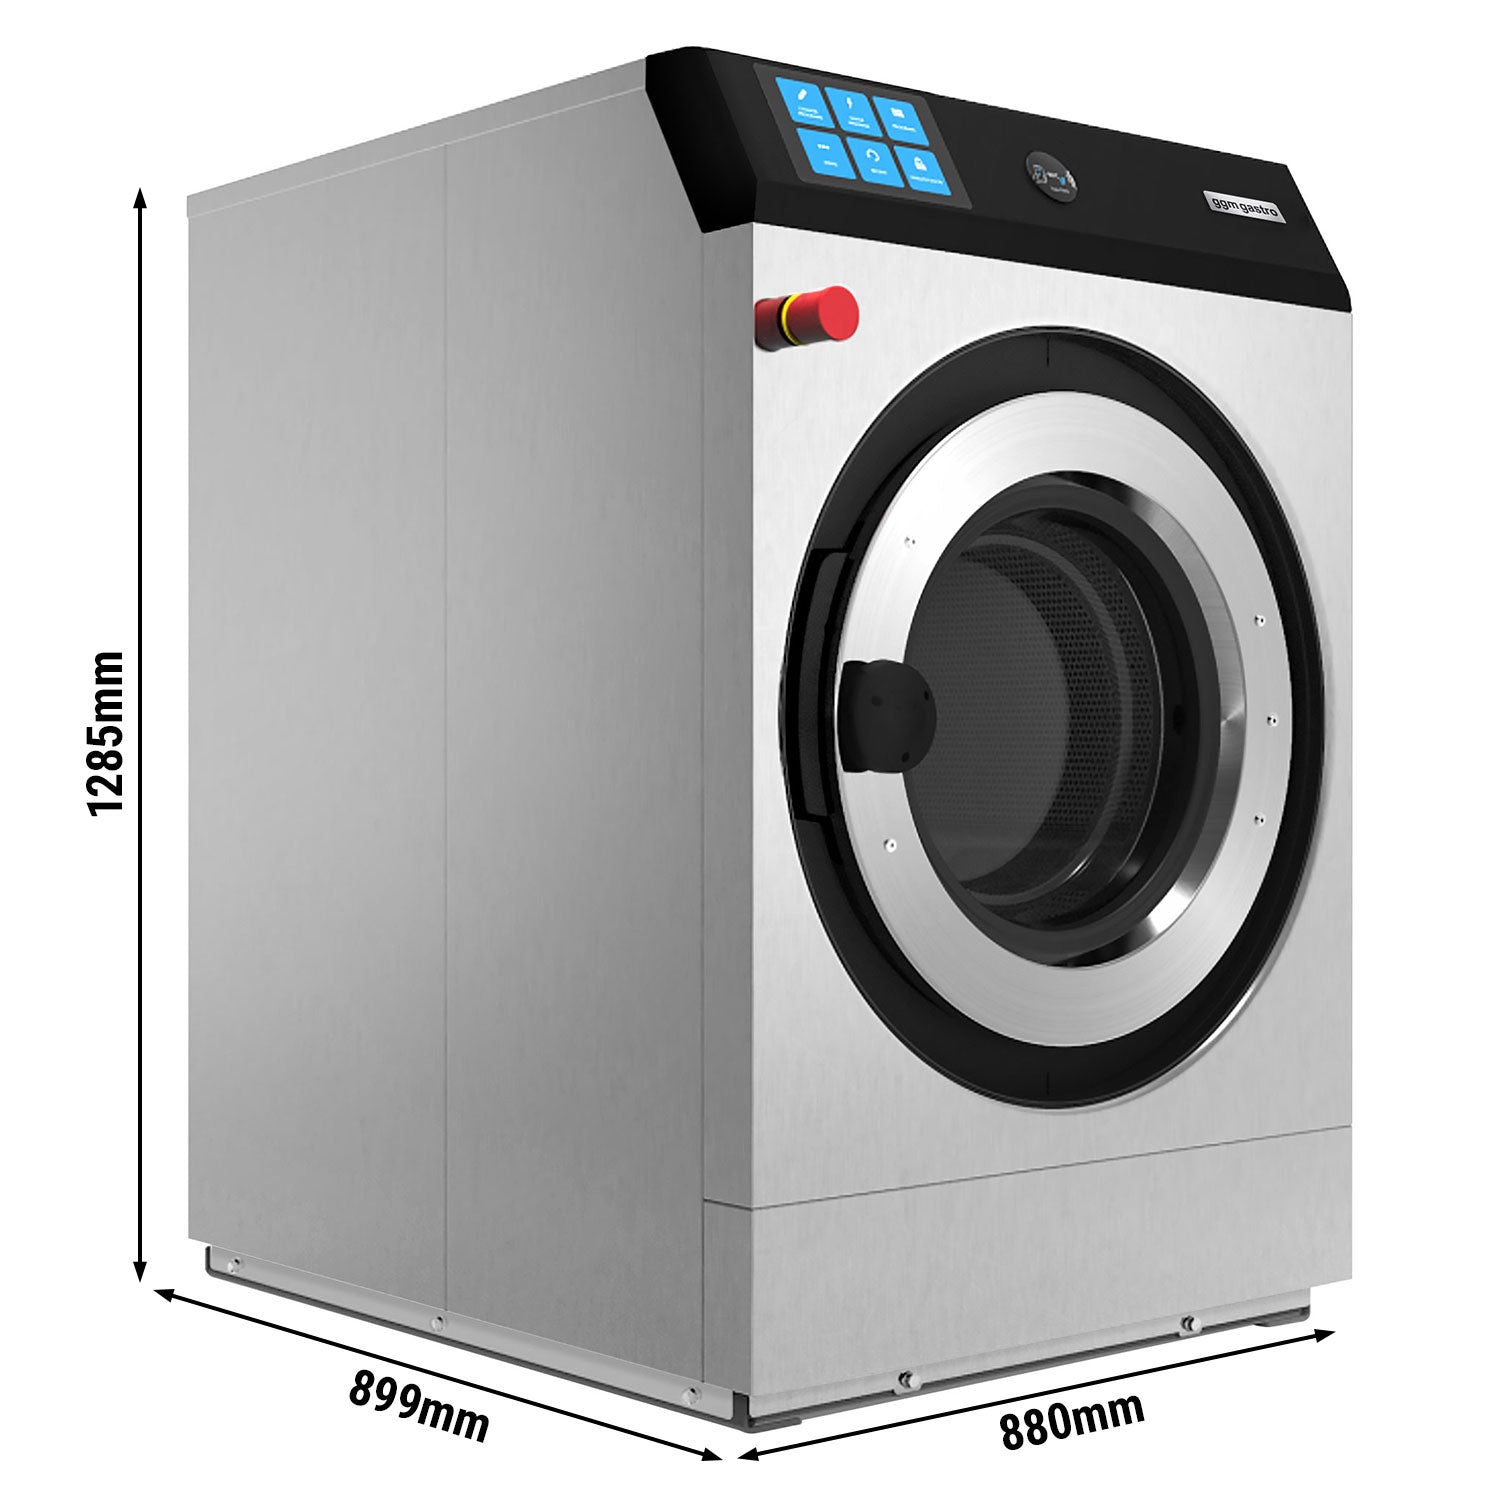 Elektrisk vaskemaskin 14 kg / 900 turer